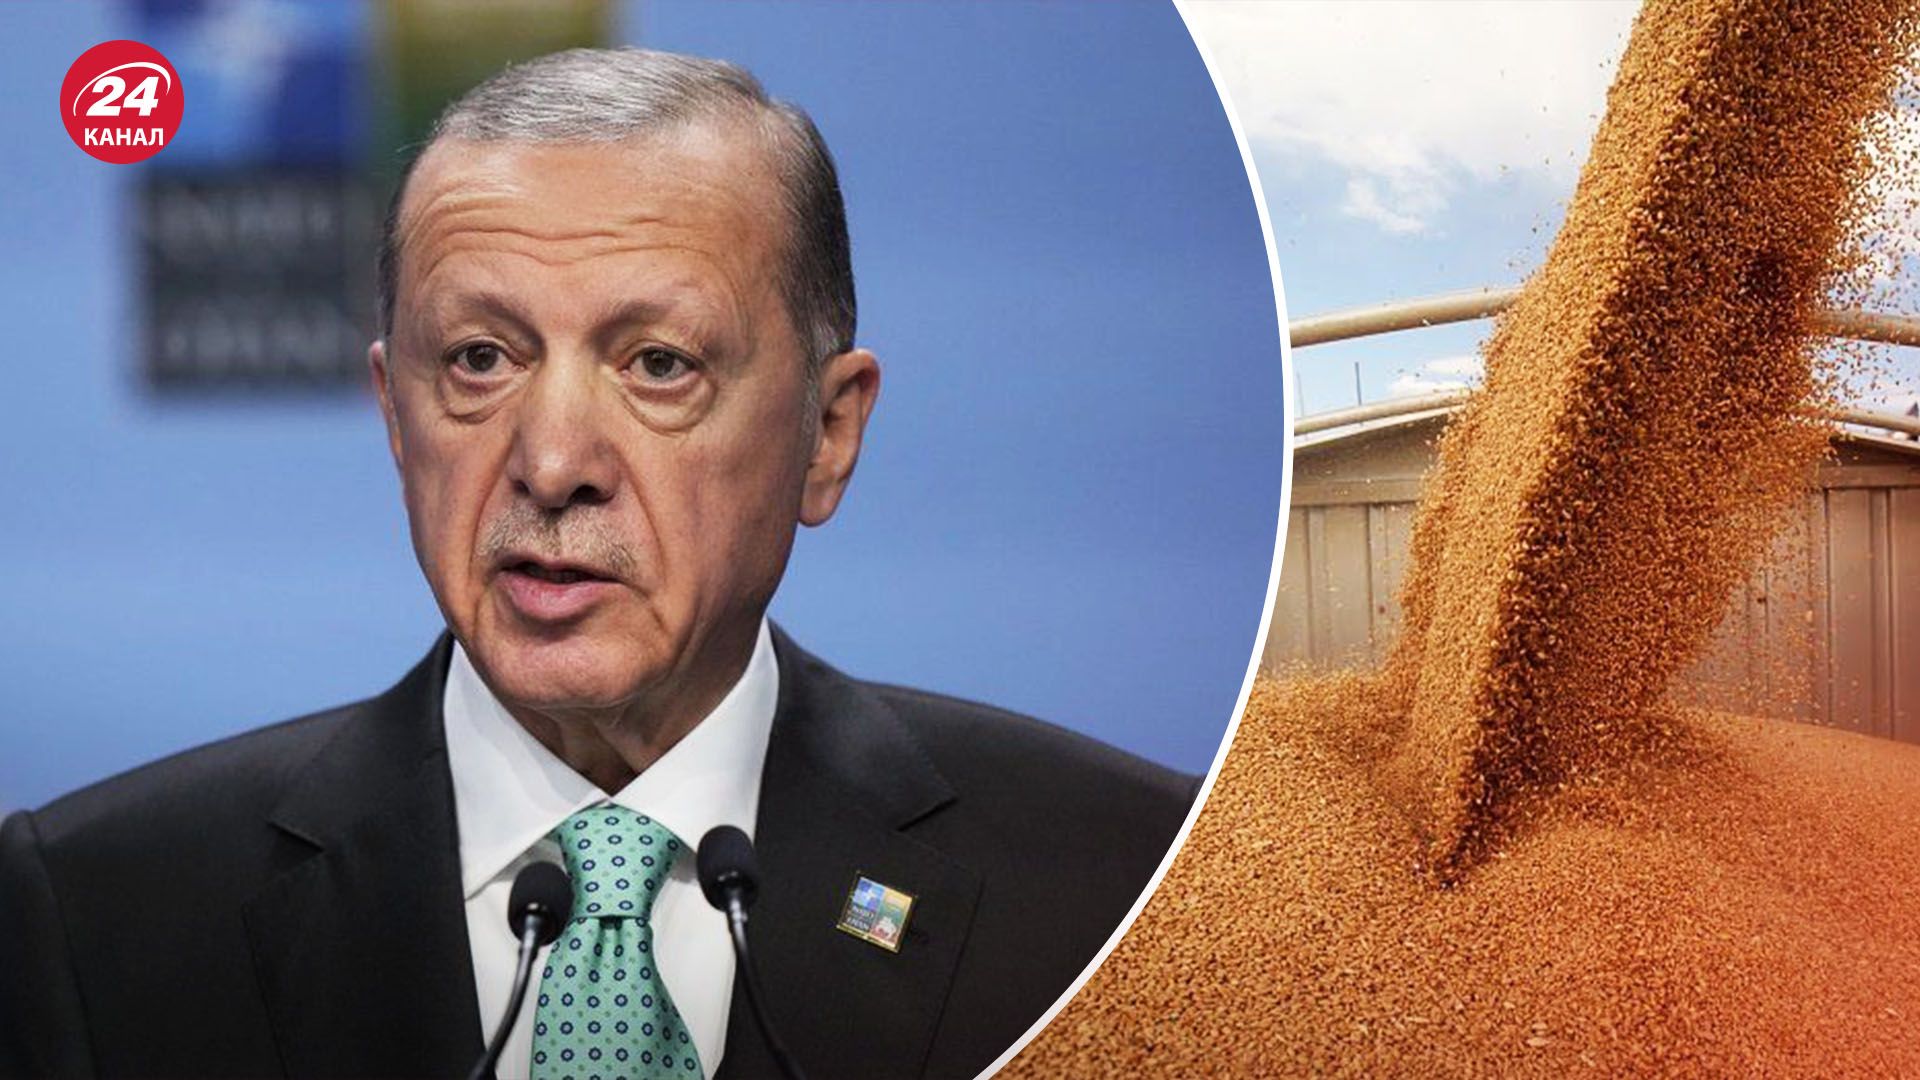 Эрдоган продвигает смягчение санкций против России - как на это отреагируют участники G20 - 24 Канал